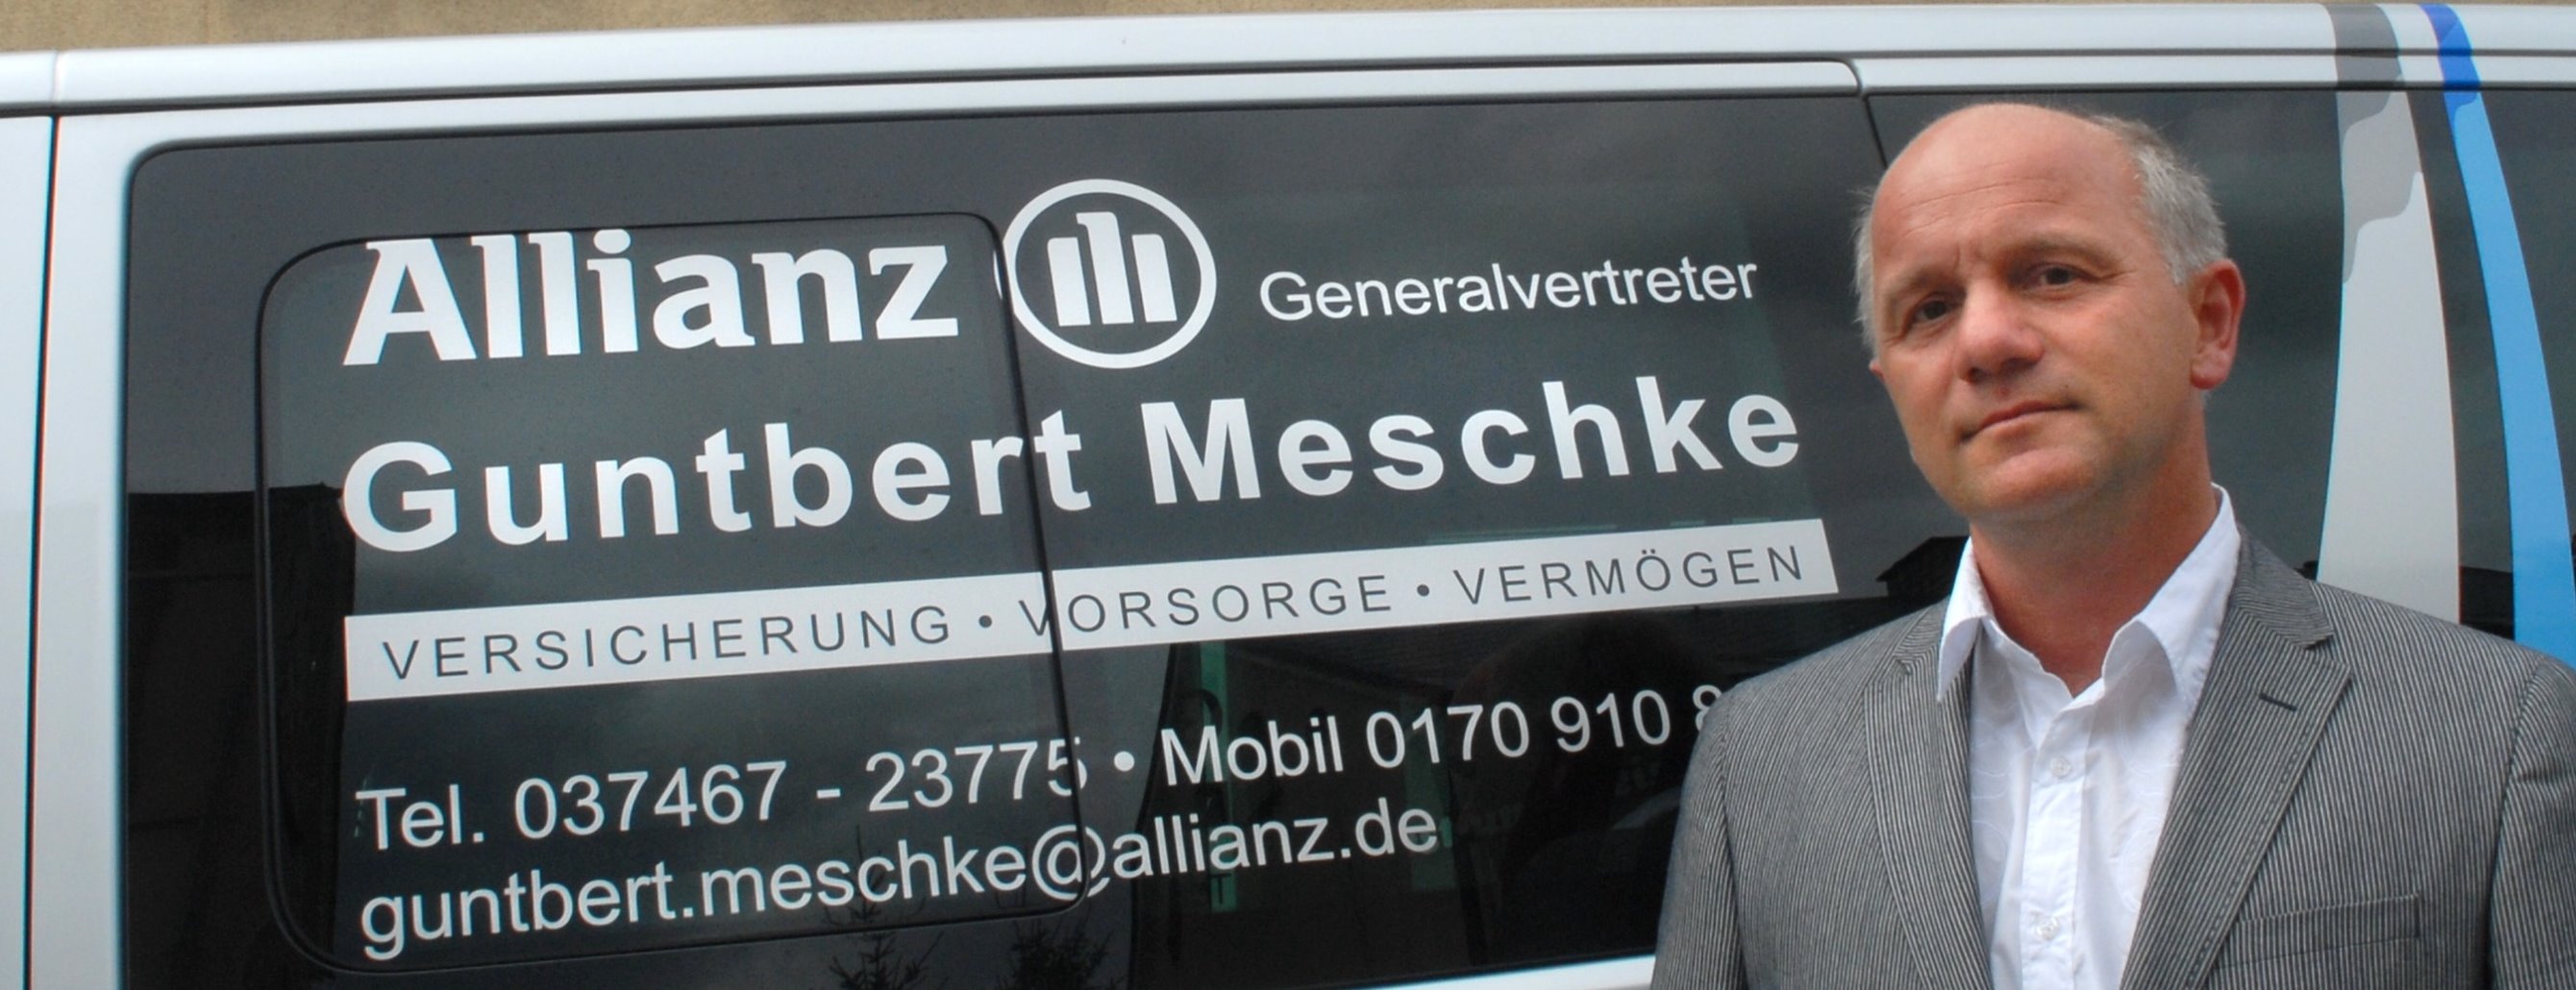 Allianz Versicherung Guntbert Meschke Klingenthal - Allianz Guntbert Meschke Generalvertreter